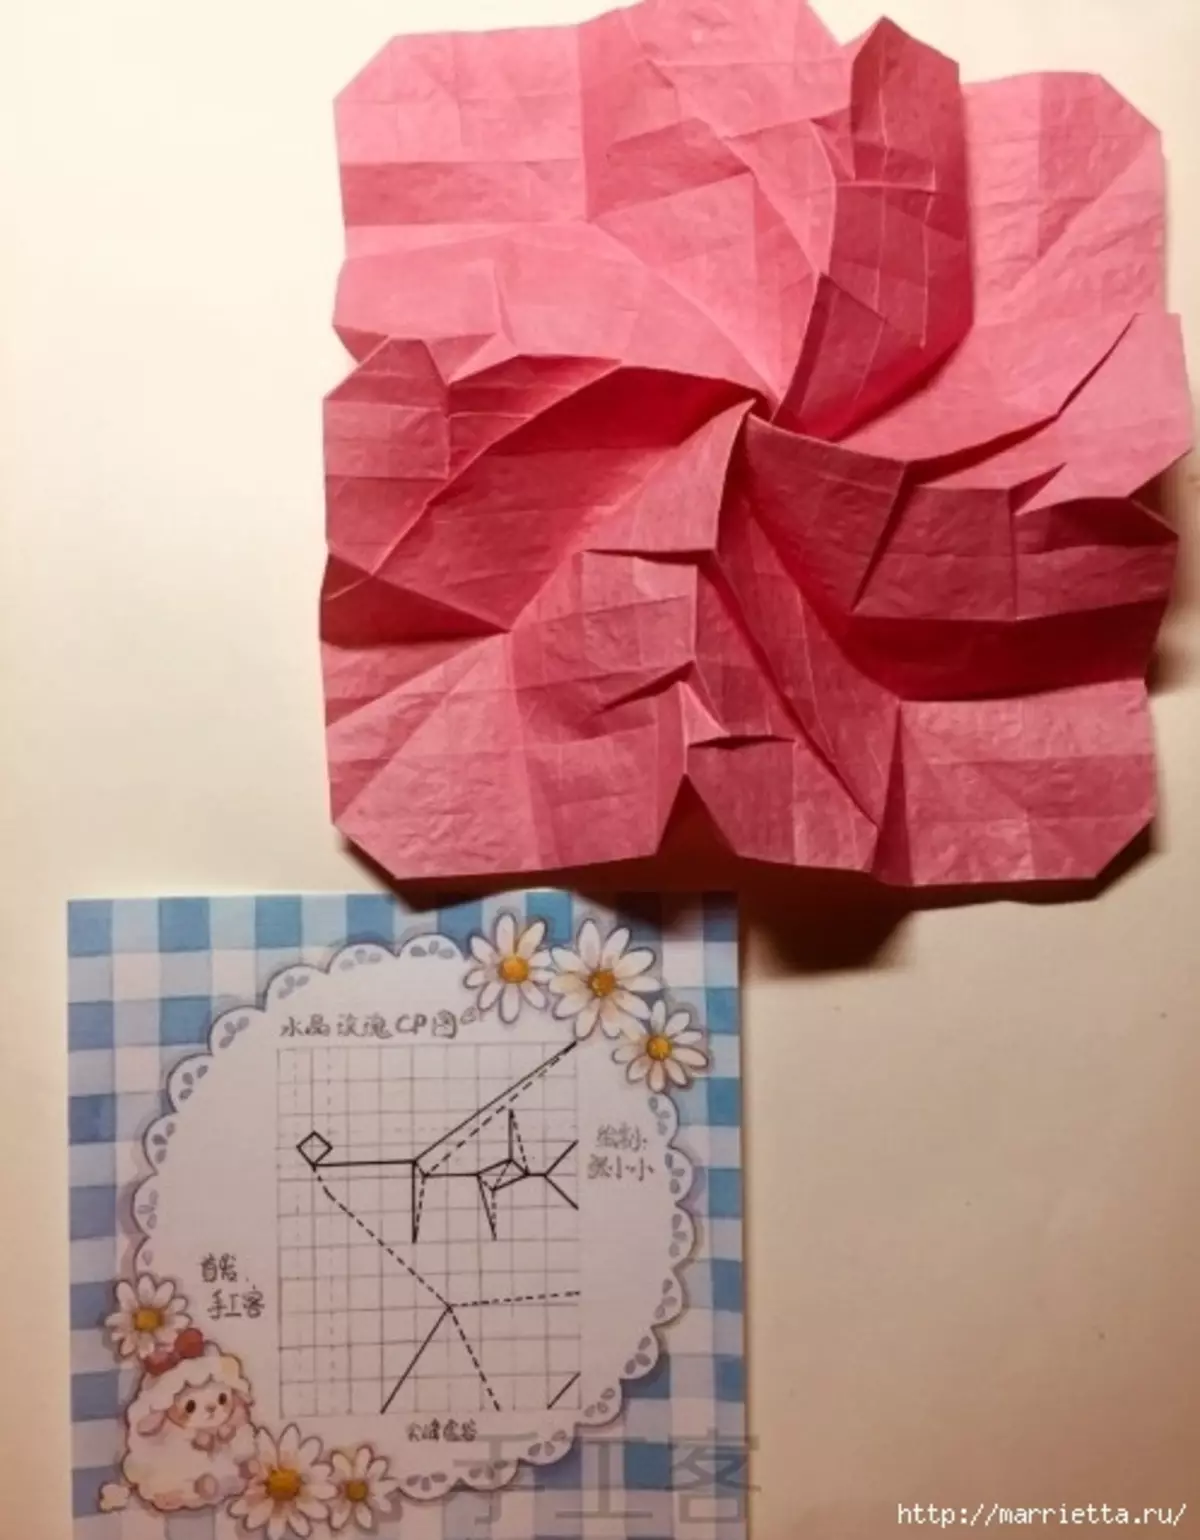 စက္ကူ Origami (6) (498x639, 166KB)